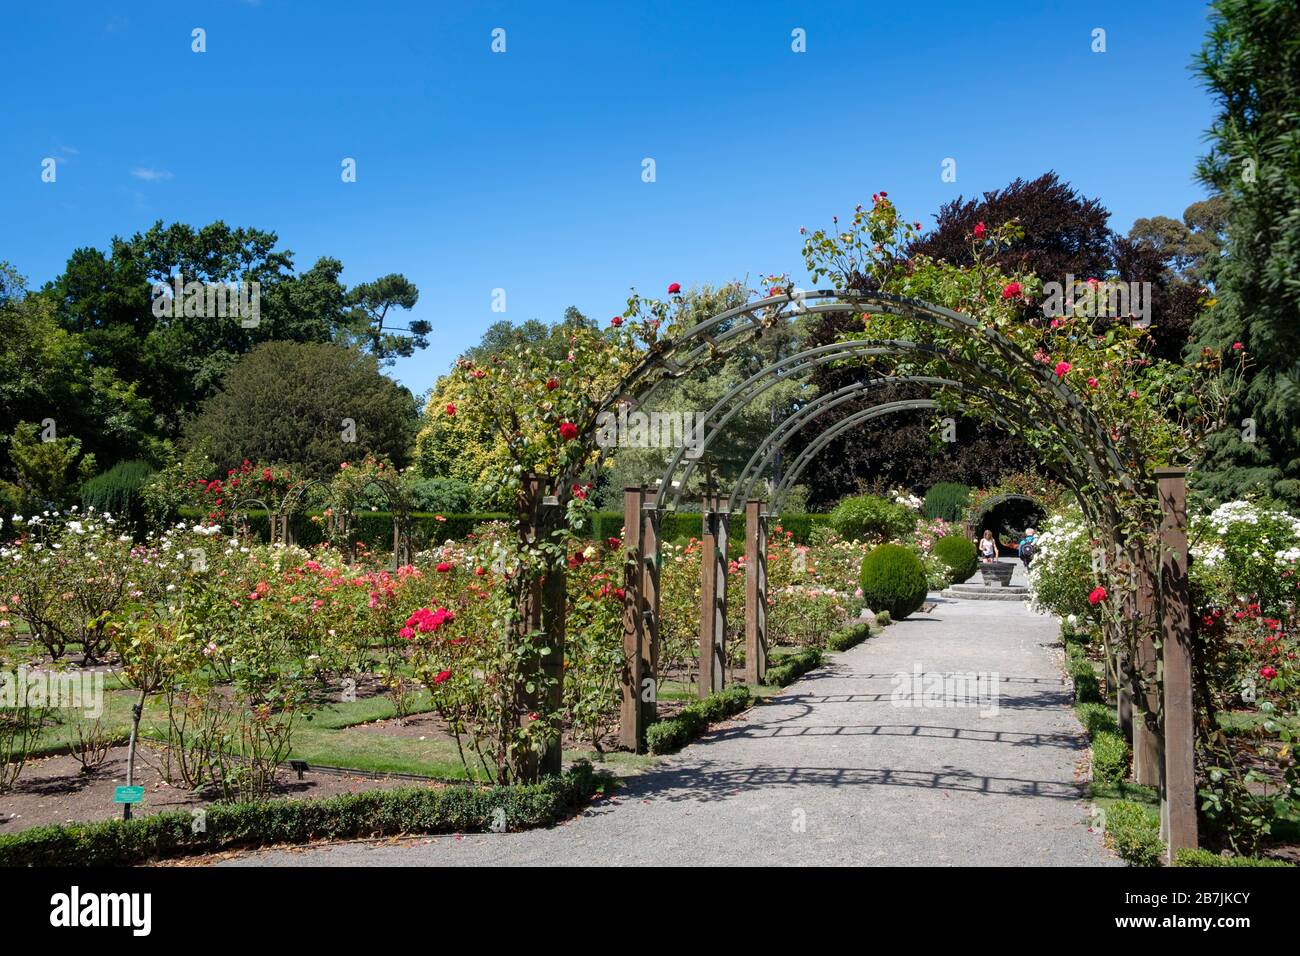 Jardins botaniques de Christchurch roseraie Garden Arbor, Christchurch, région de Canterbury, île du Sud, Nouvelle-Zélande Banque D'Images